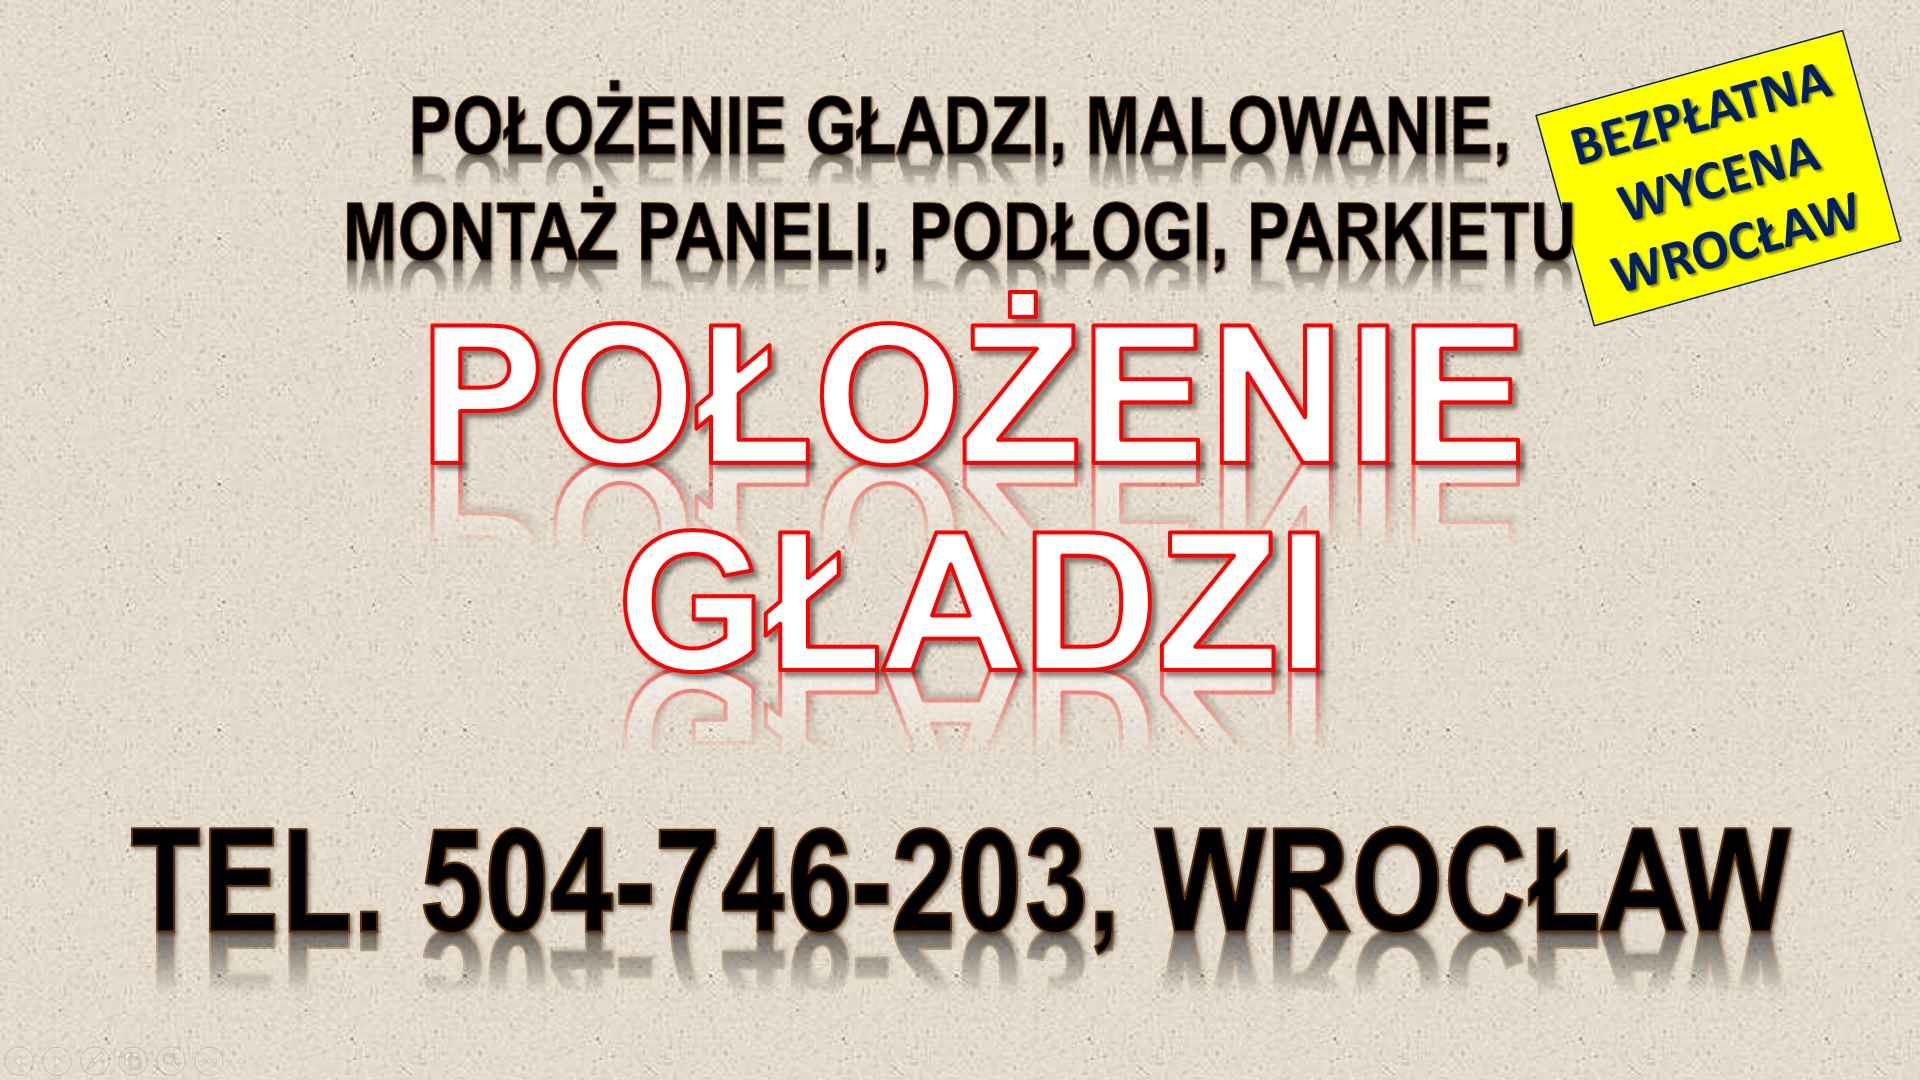 Położenie gładzi, cena, tel. 504-746-203, Wrocław. Gładzie, kładzenie Psie Pole - zdjęcie 1